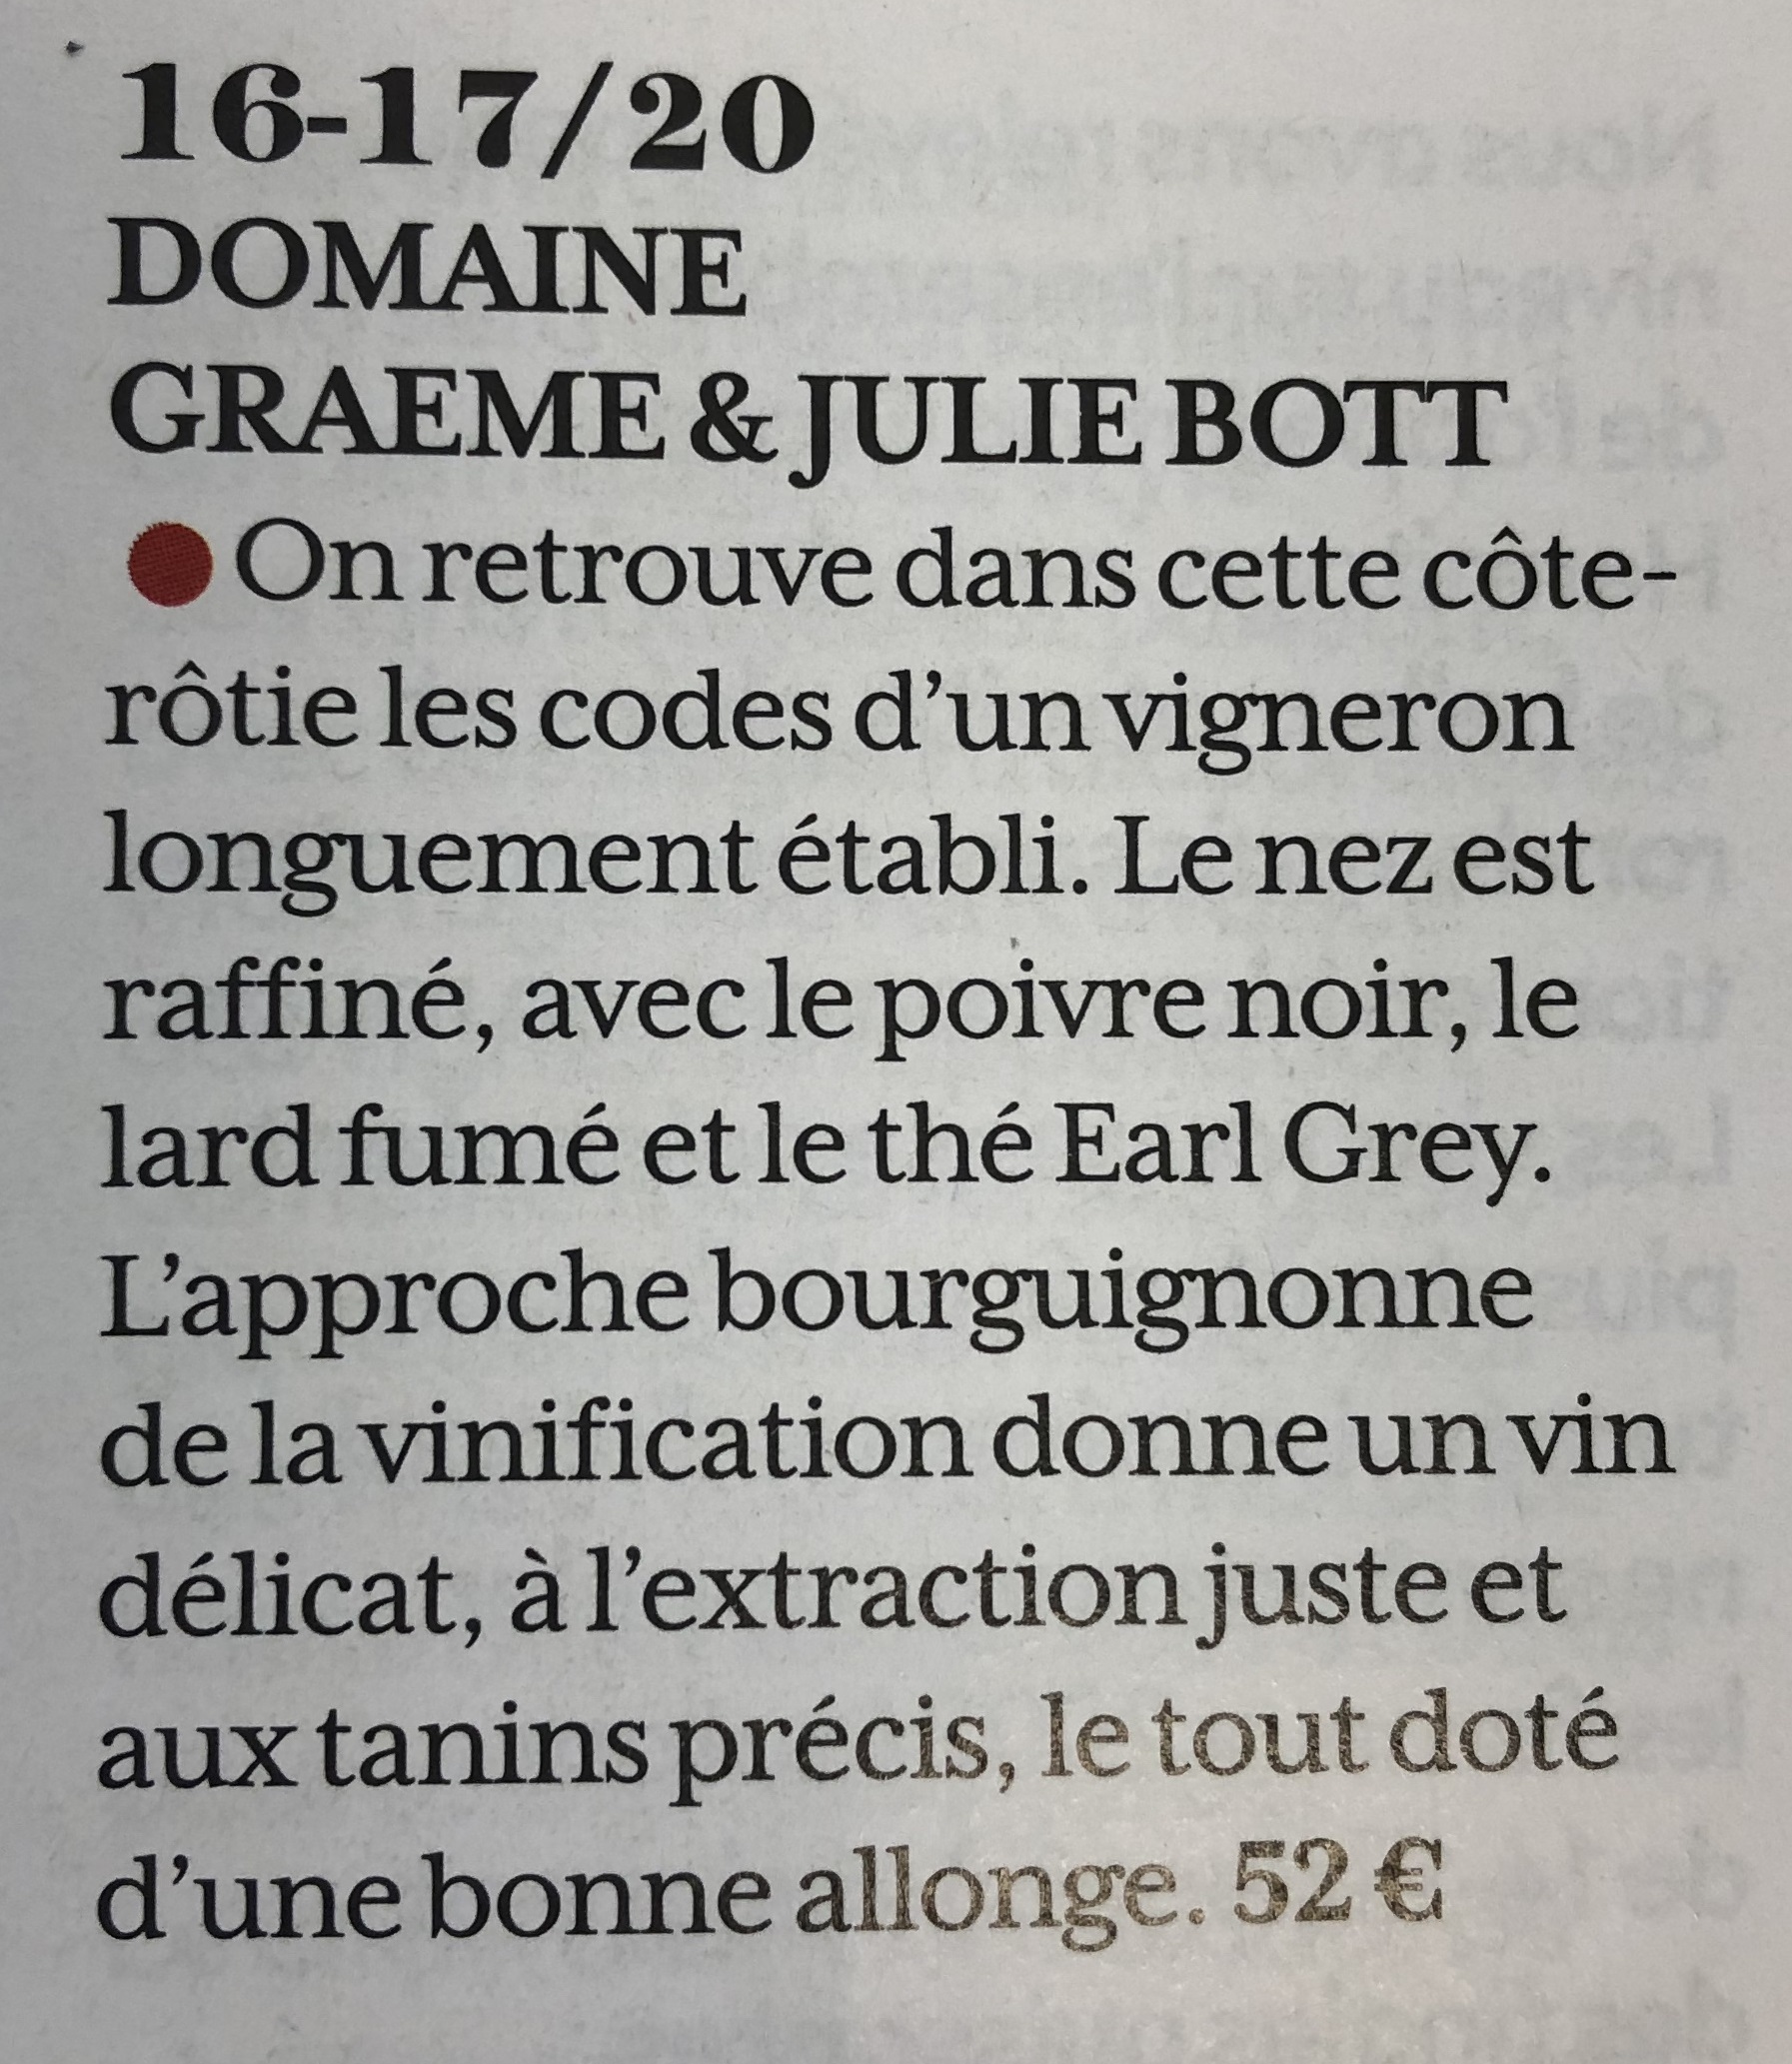 Côte-Rôtie 2018 BOTT G&J